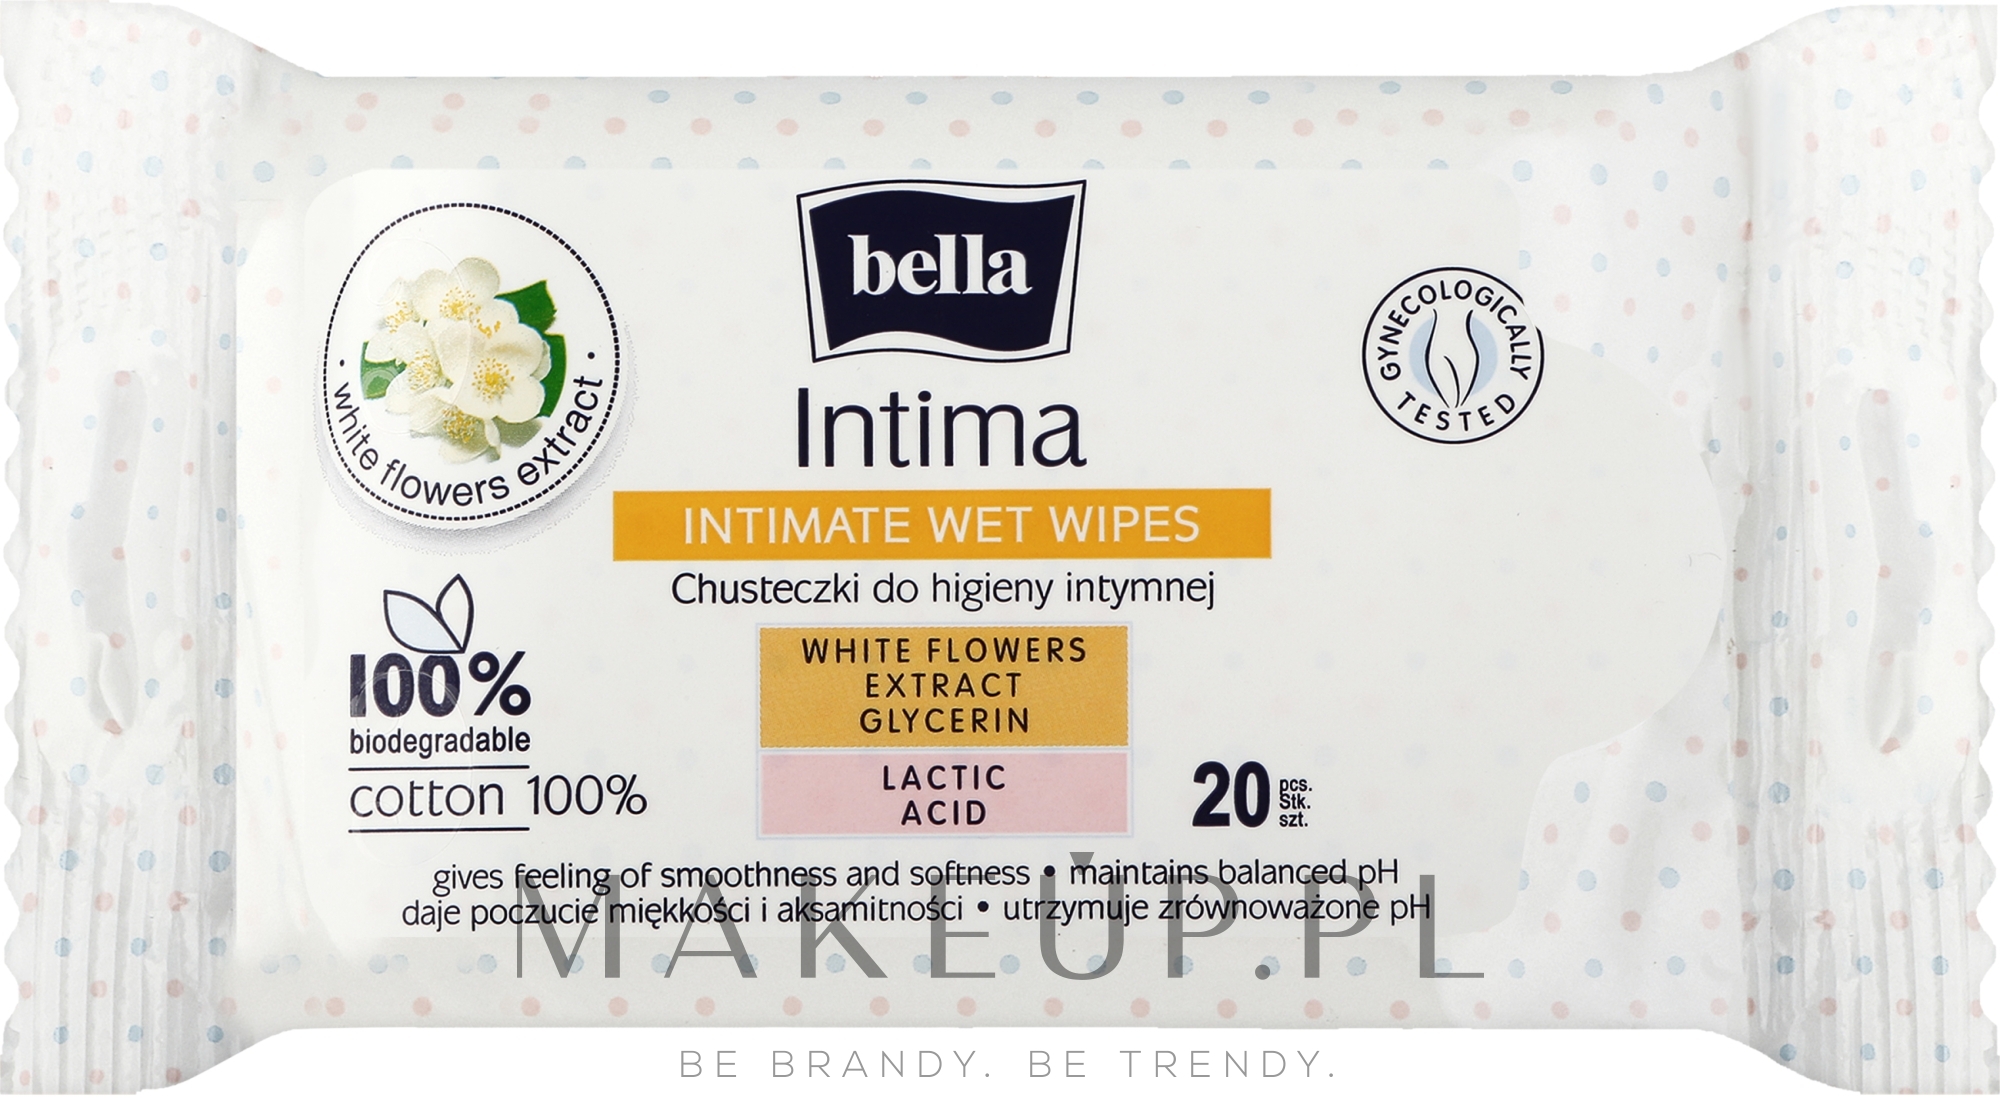 Chusteczki do higieny intymnej, 20 szt. - Bella Intima Wet Wipes — Zdjęcie 20 szt.